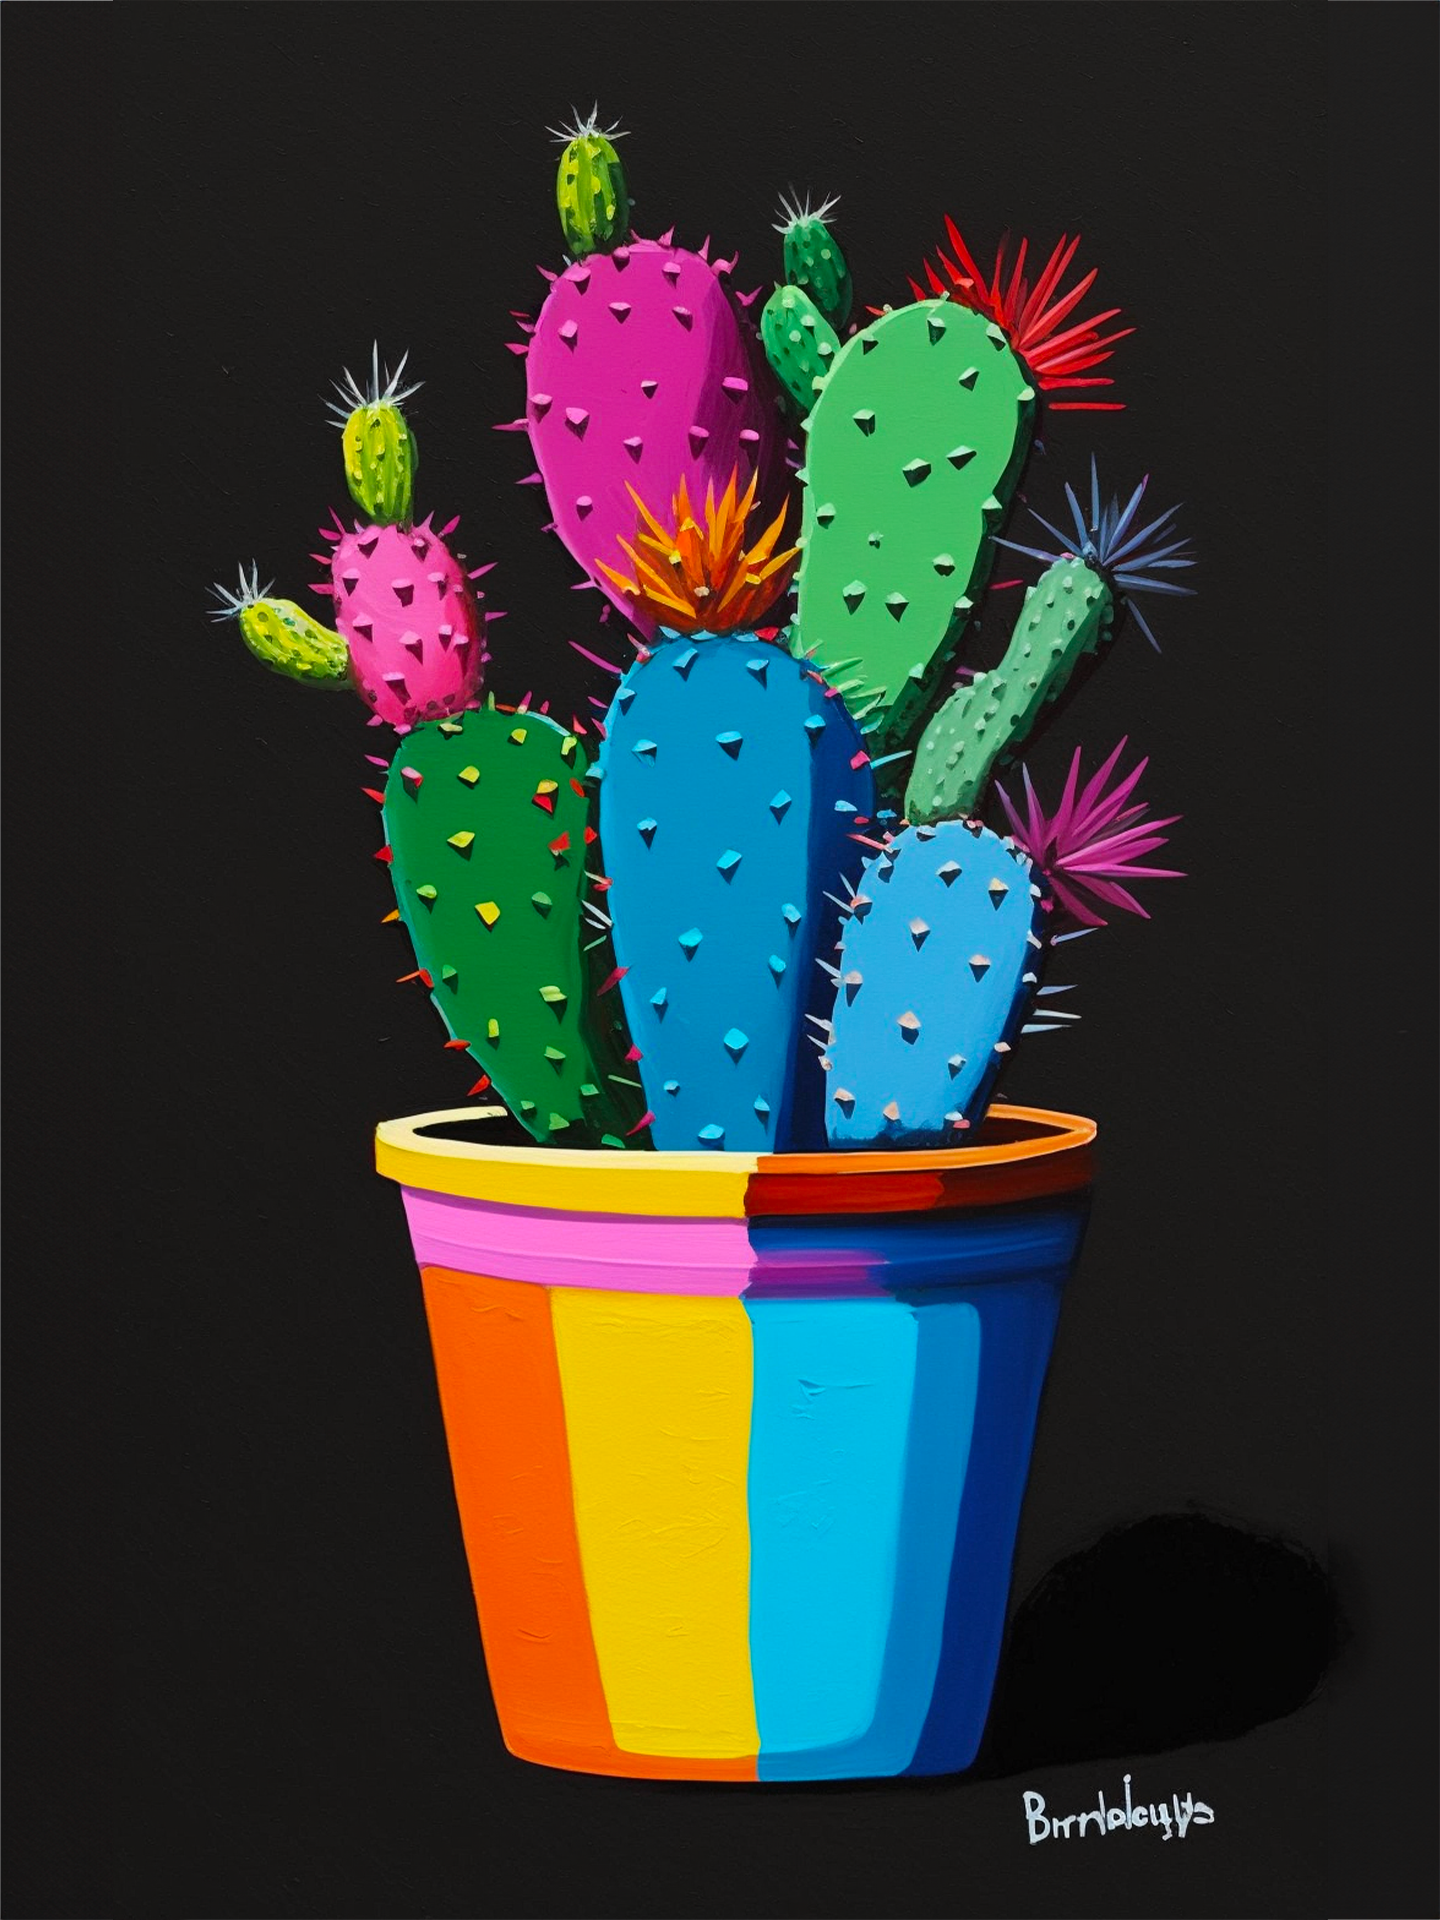 Tableau décoratif Conception de cactus - TenStickers